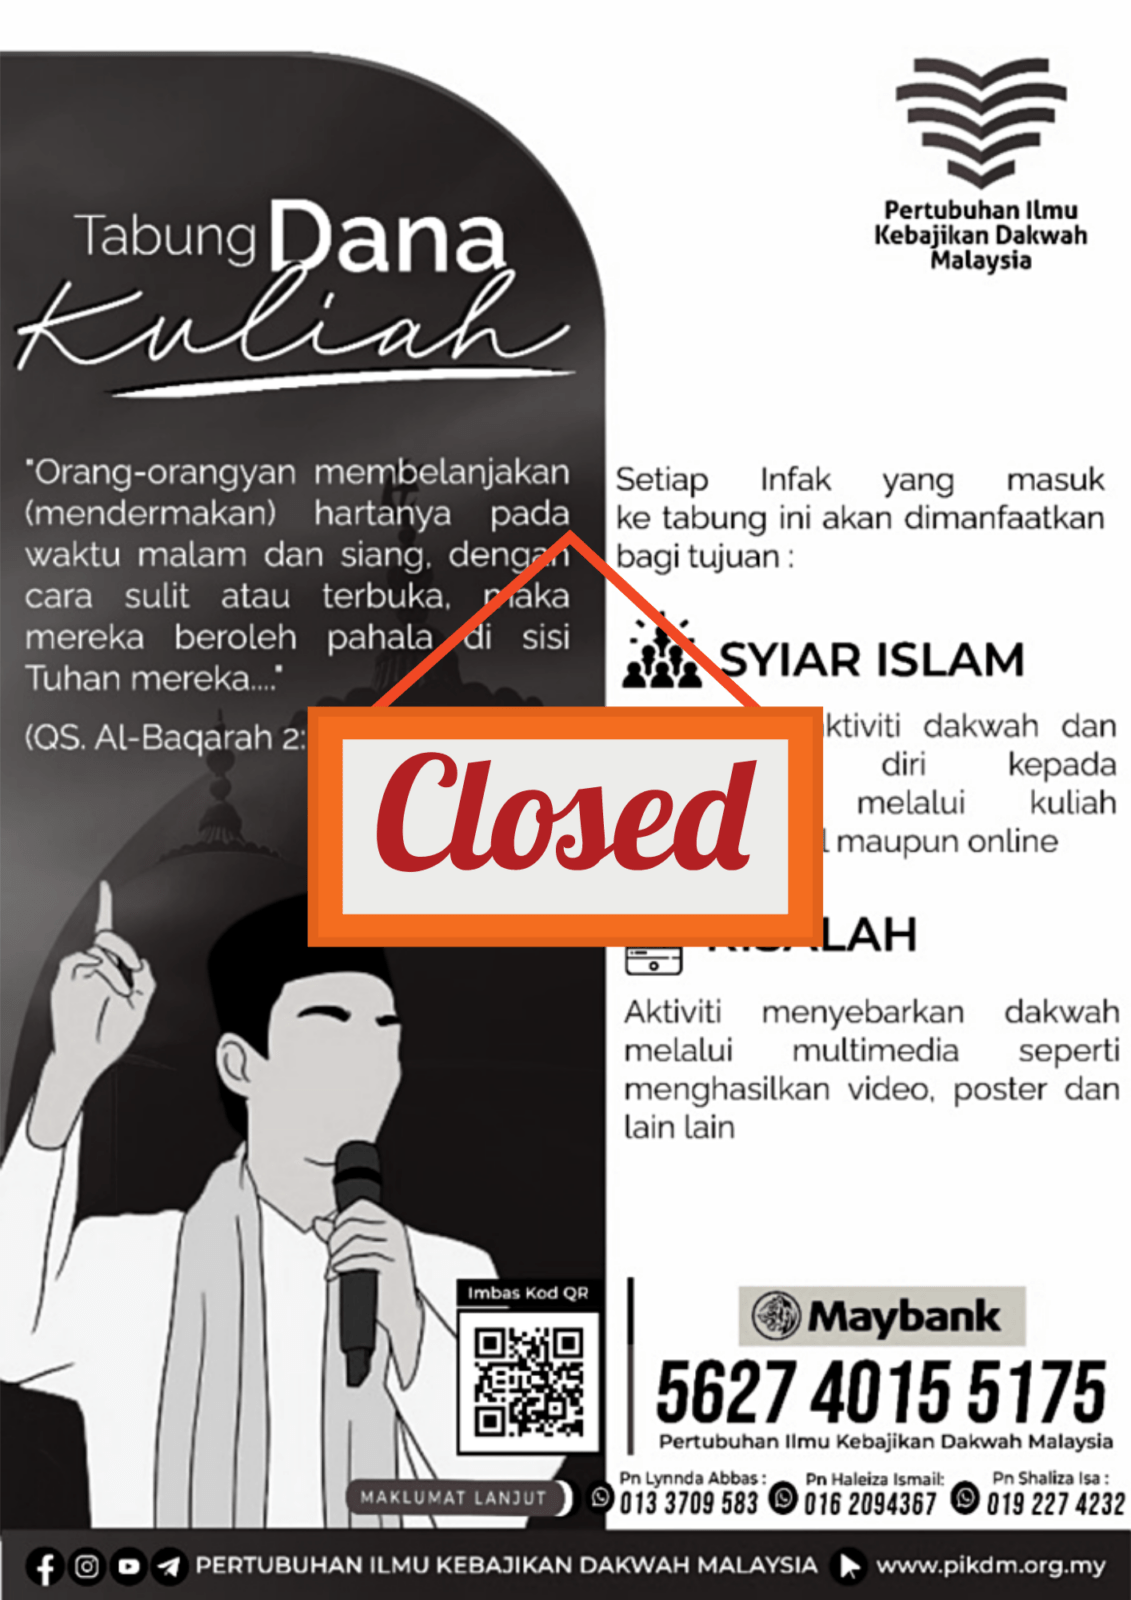 Tabung-Dana-Kuliah-closed